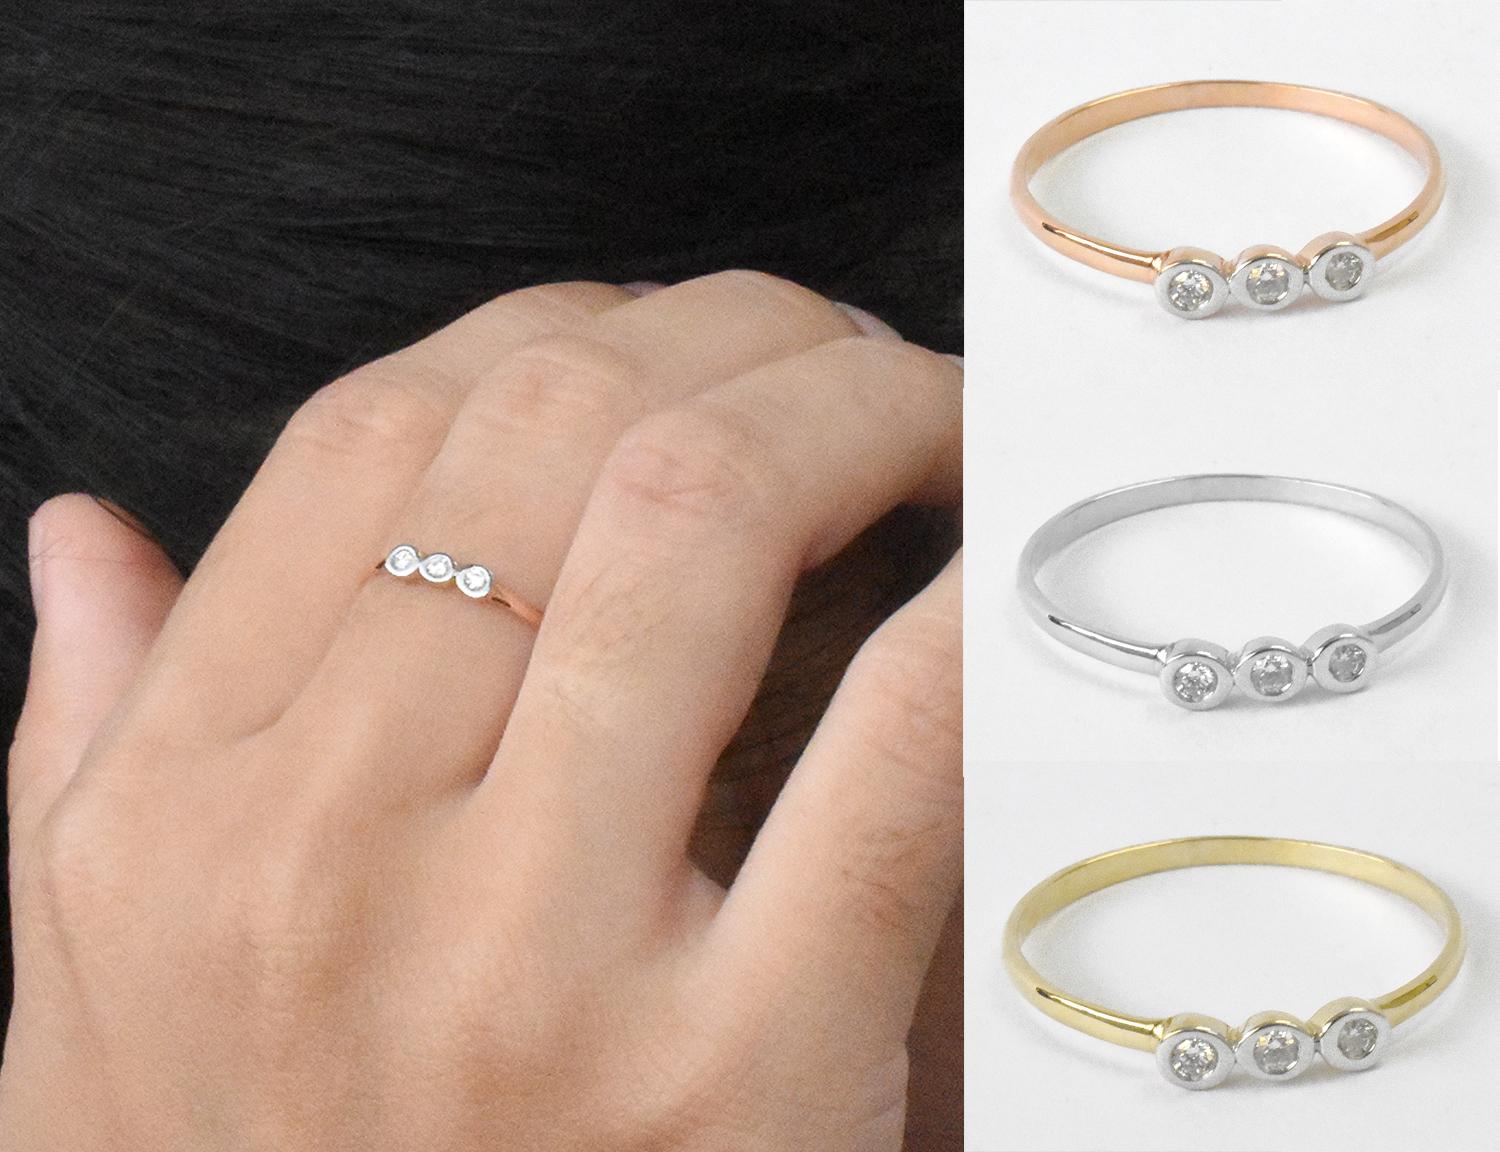 For Sale:  14k Gold Diamond 1.9 mm Ring Bezel Setting Three Diamond Ring Trio Diamond Ring 5